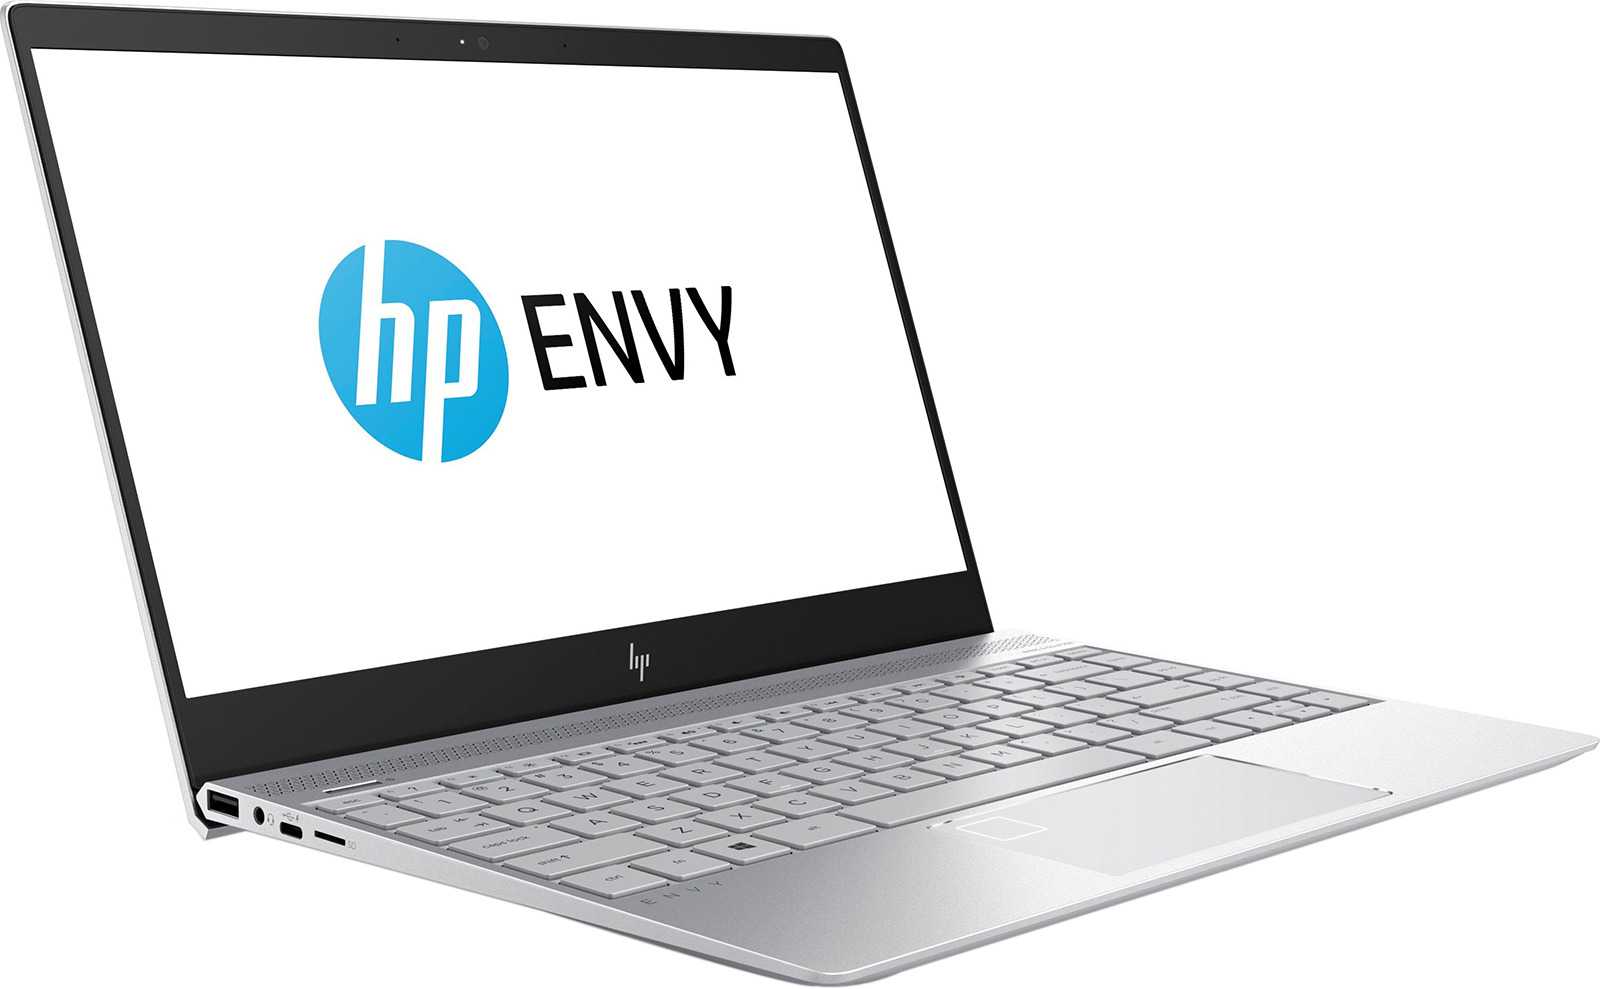 Ноутбук hp envy 4-1055er — купить, цена и характеристики, отзывы